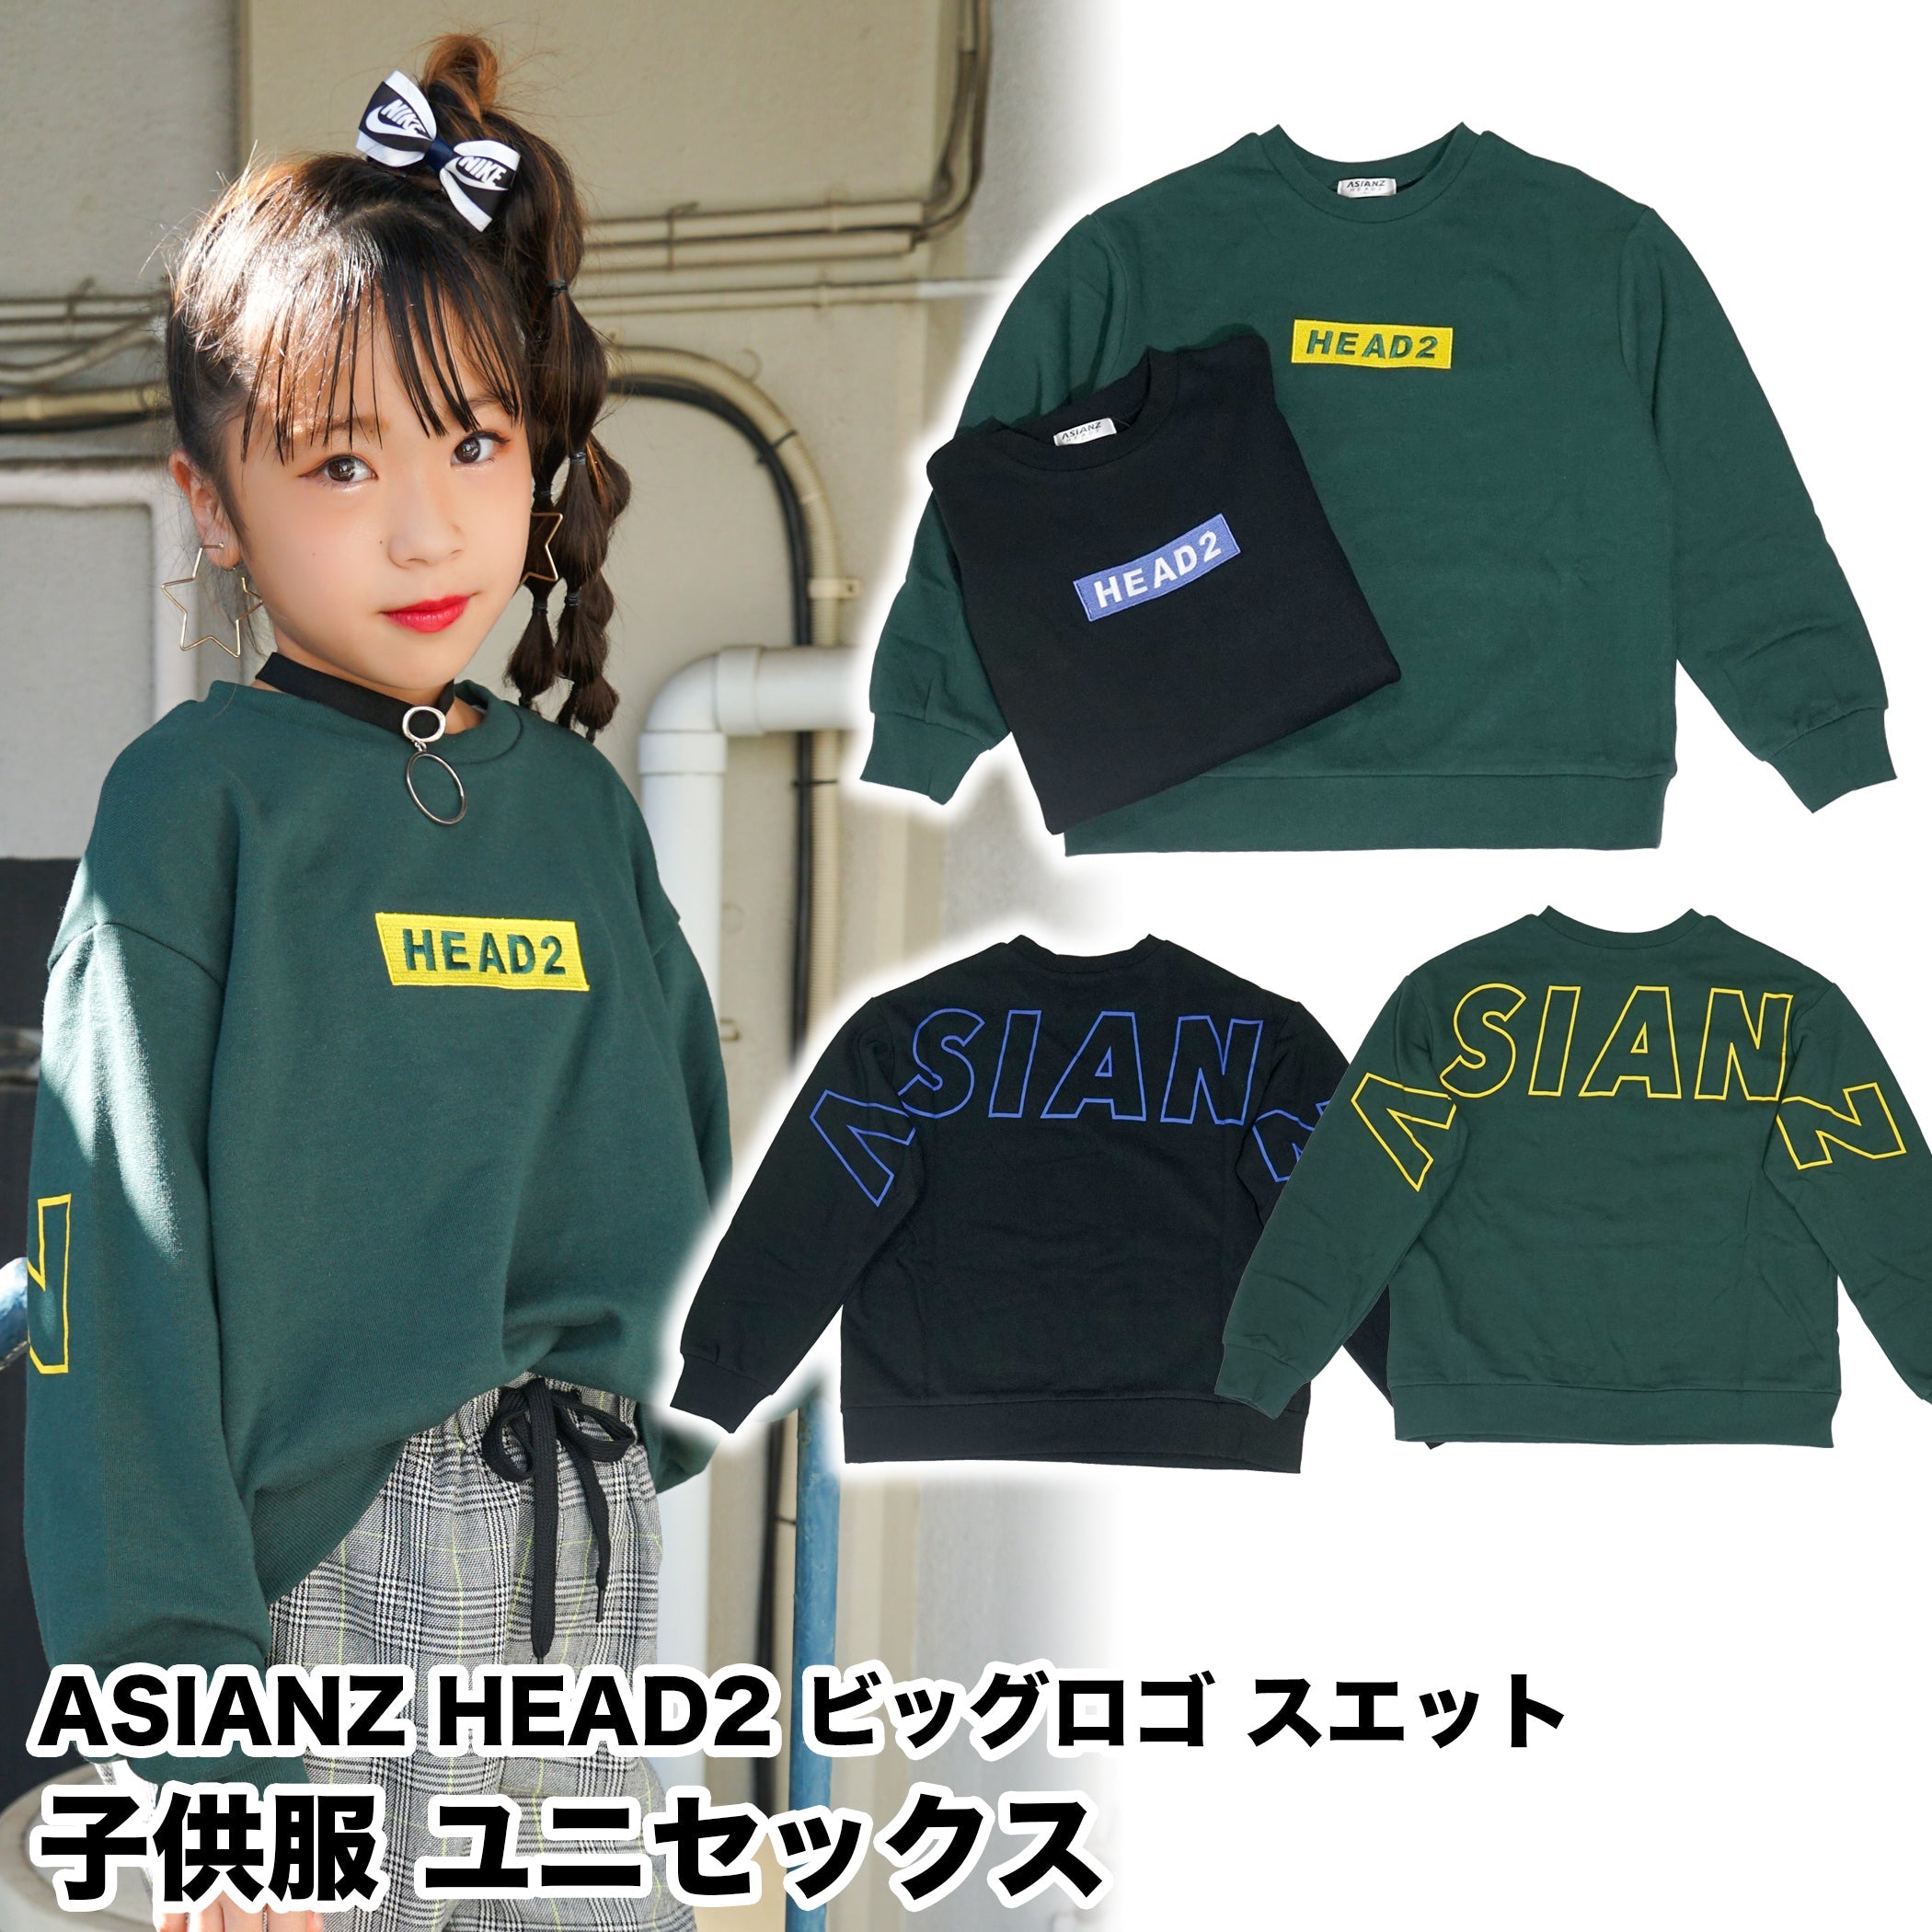 (セール商品) ASIANZ HEAD2 BIGロゴ スウェット キッズウェアー